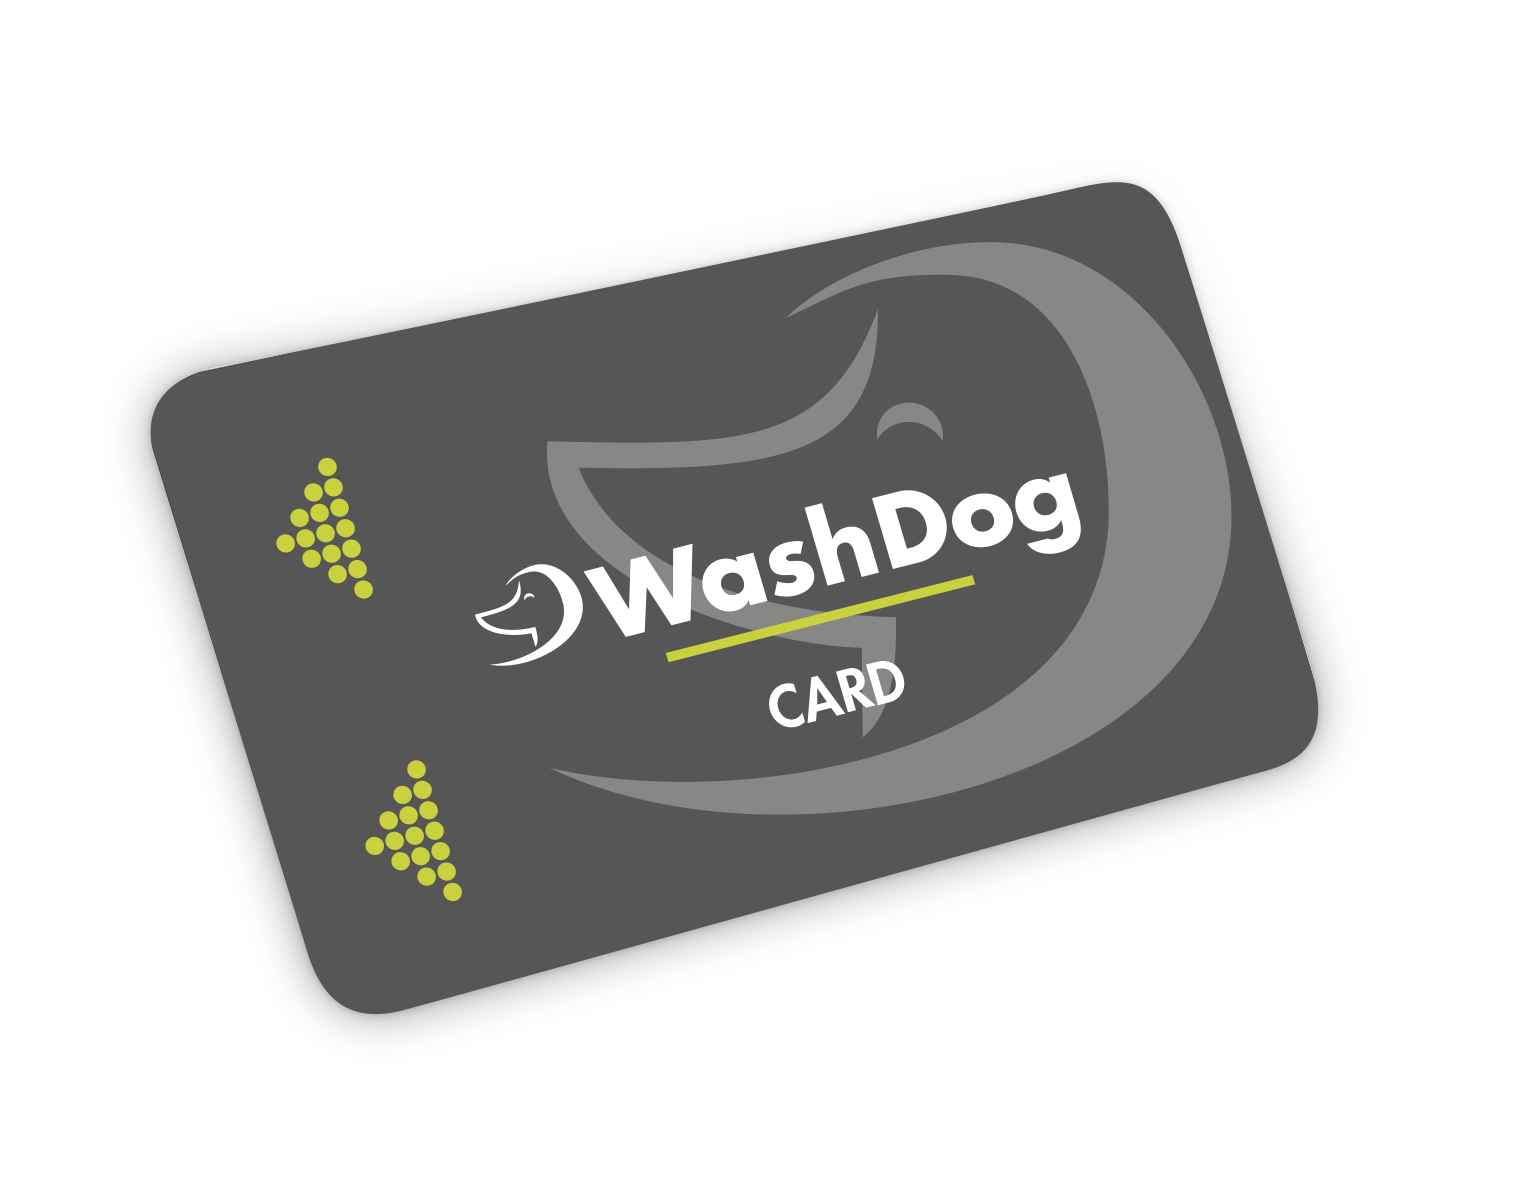 Carte wash dog sur fond transparent donnant accès au self-service 7 jours sur 7